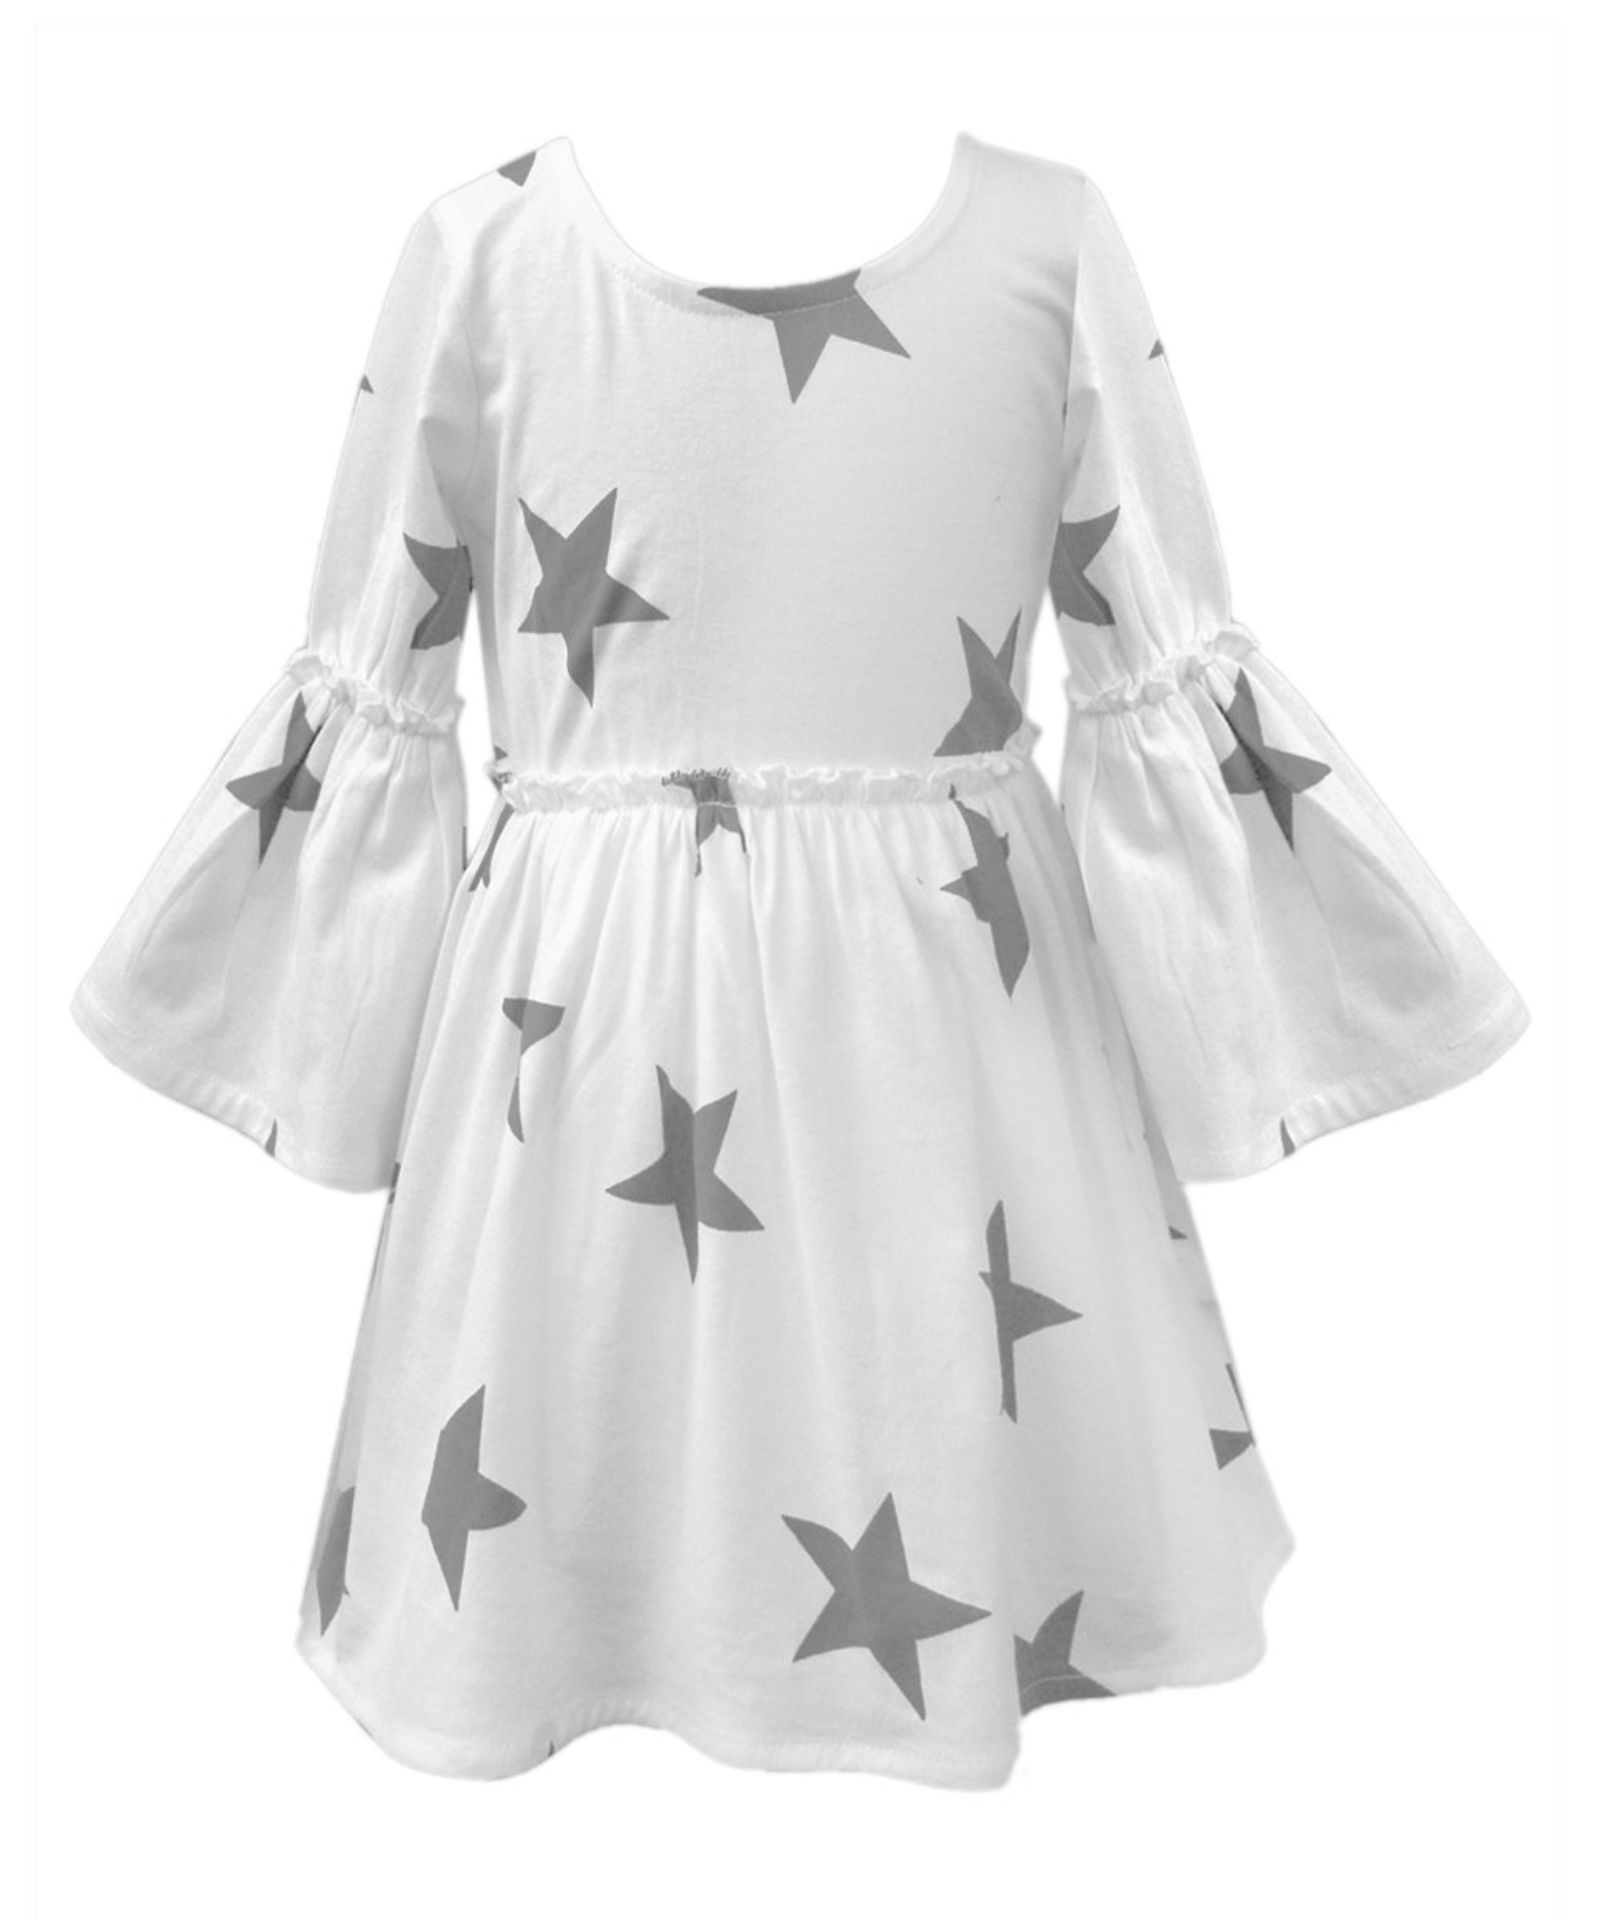 White & Gray Star A-Line Dress - Infant, Toddler & Girls